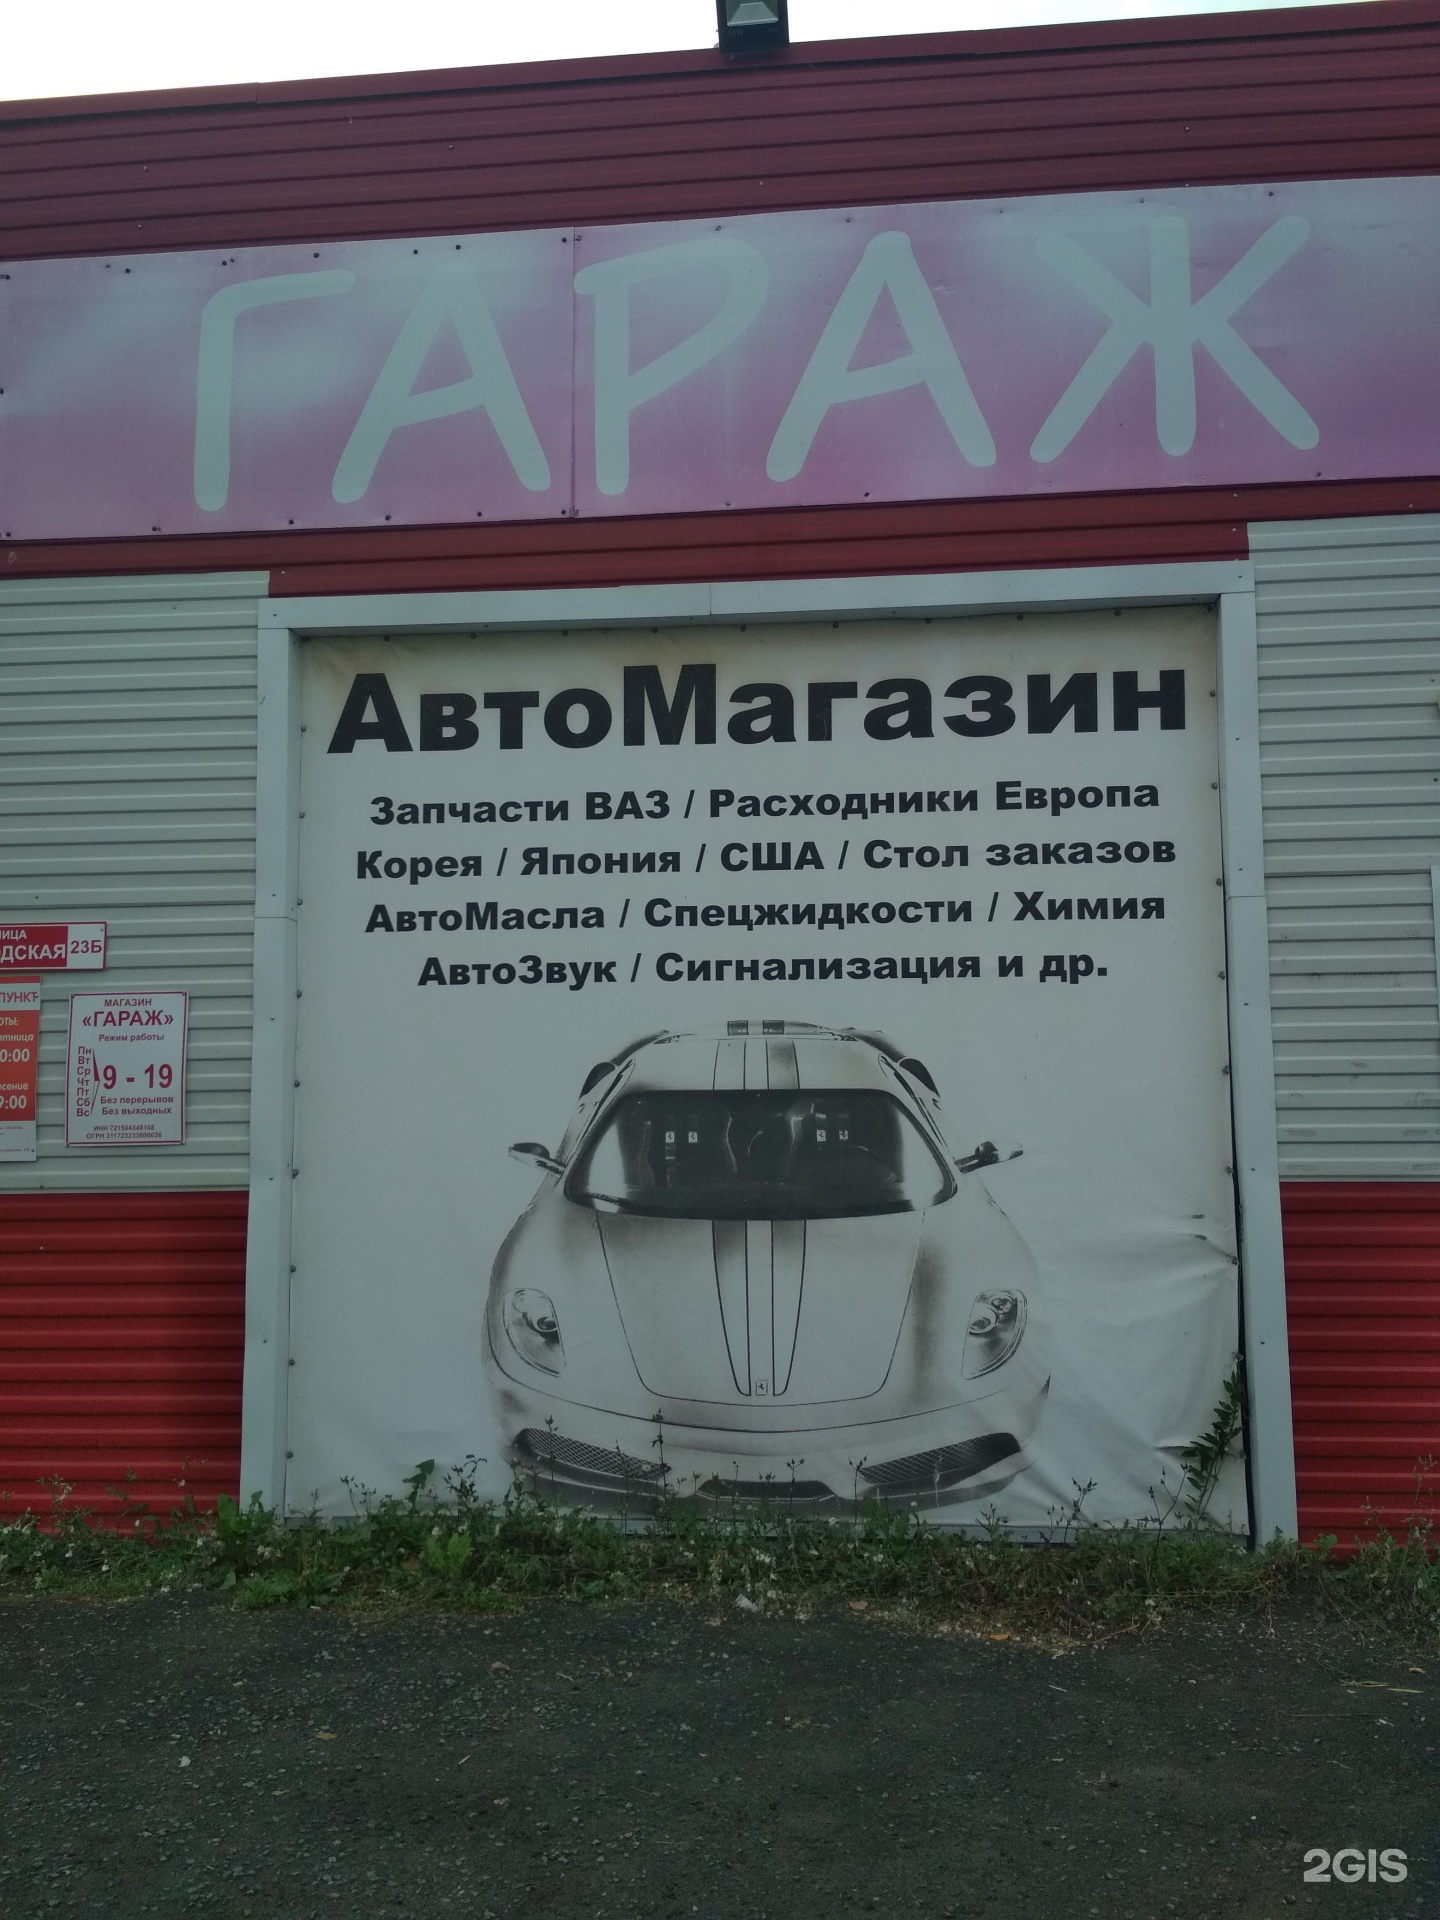 Аренда гаража в нижнем. Магазин в гараже. Магазин гараж Москва. Гараж магазин автозапчастей Пенза. Магазин гараж Магнитогорск.